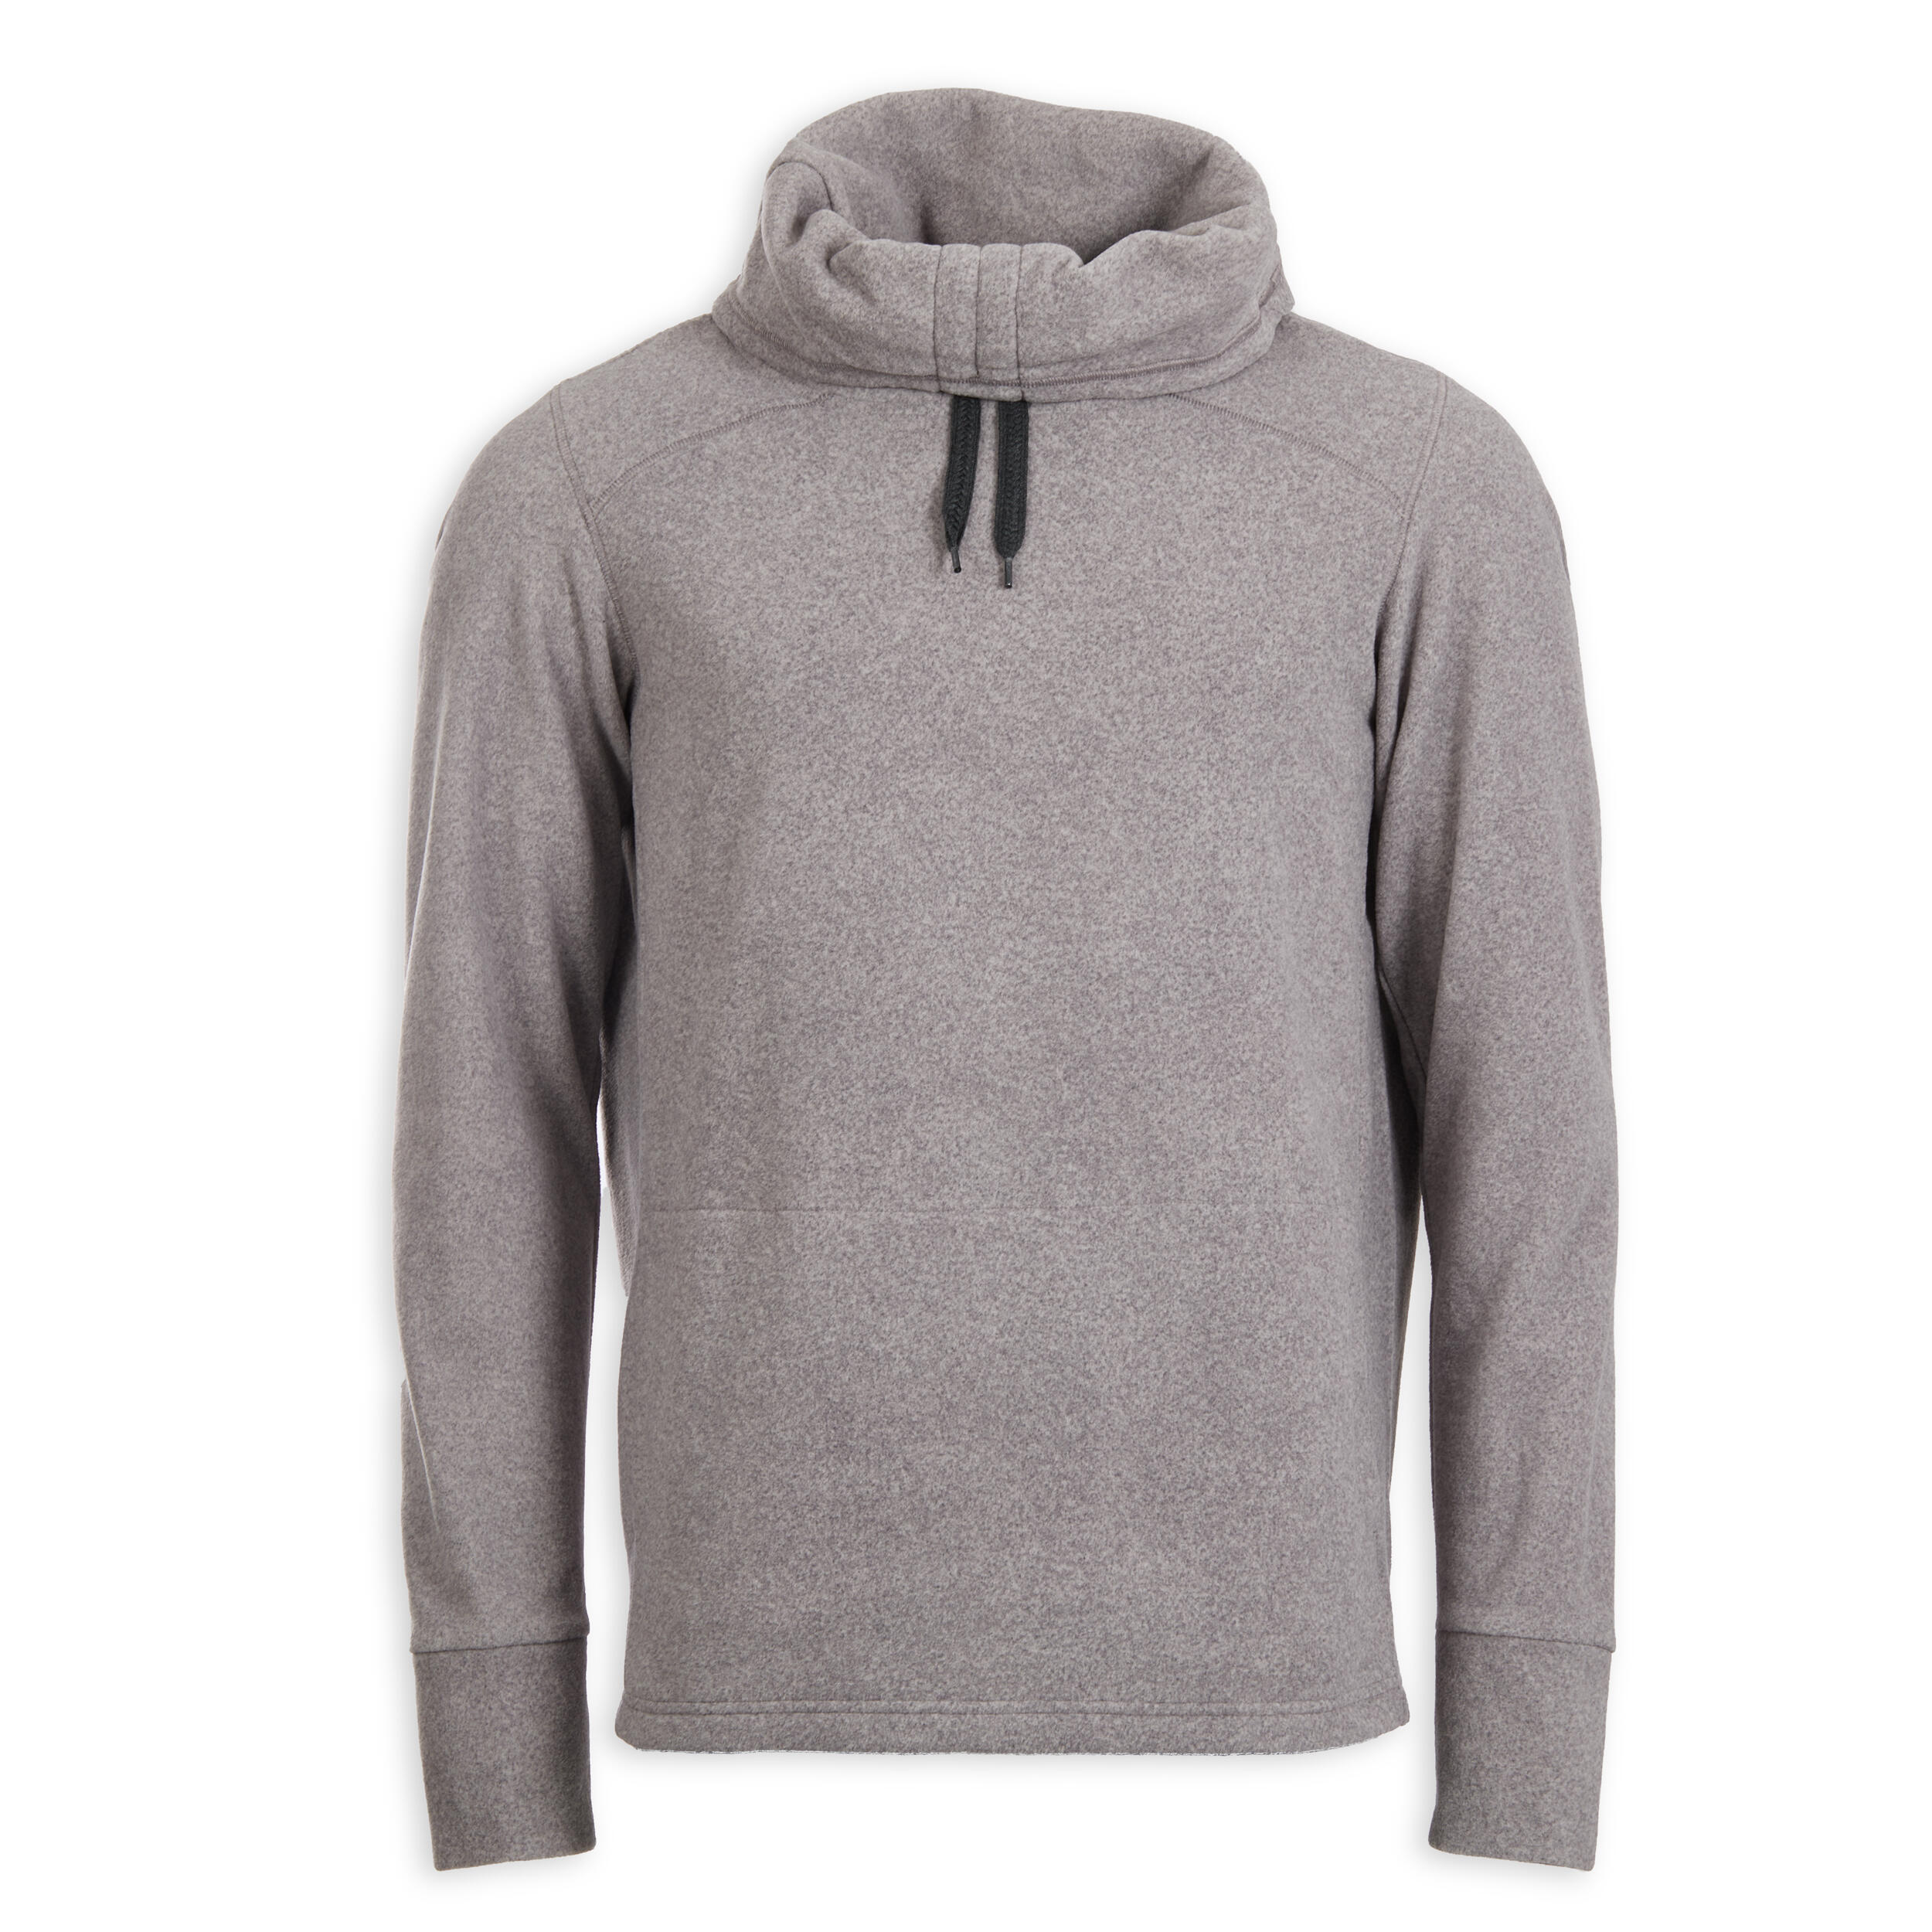 Men's Fleece Yoga Sweatshirt - Dark Grey 6/6